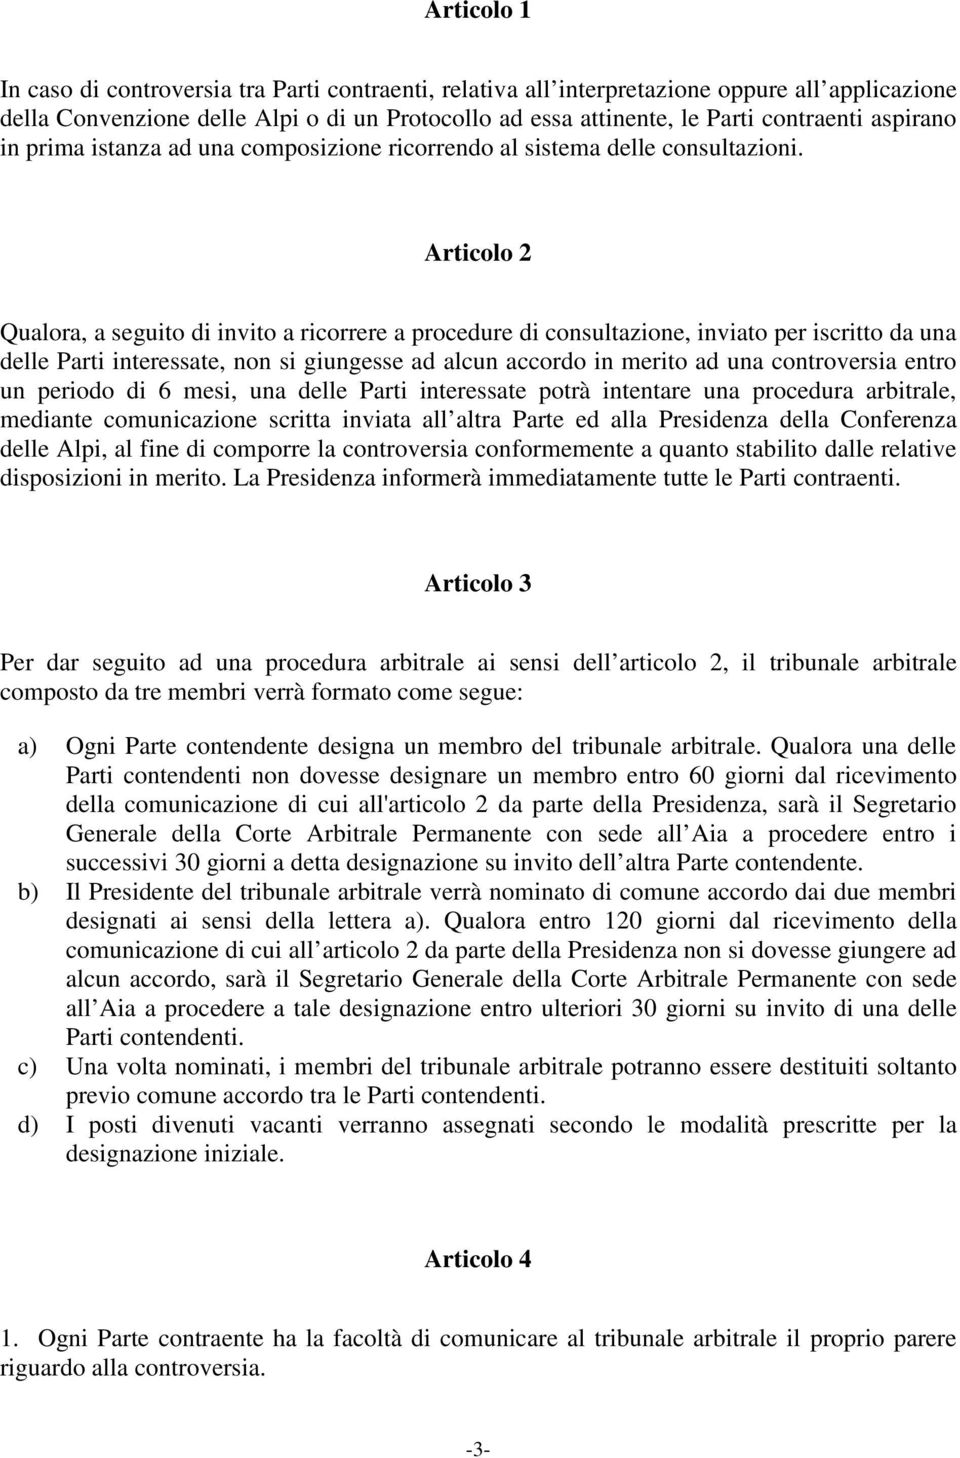 Articolo 2 Qualora, a seguito di invito a ricorrere a procedure di consultazione, inviato per iscritto da una delle Parti interessate, non si giungesse ad alcun accordo in merito ad una controversia